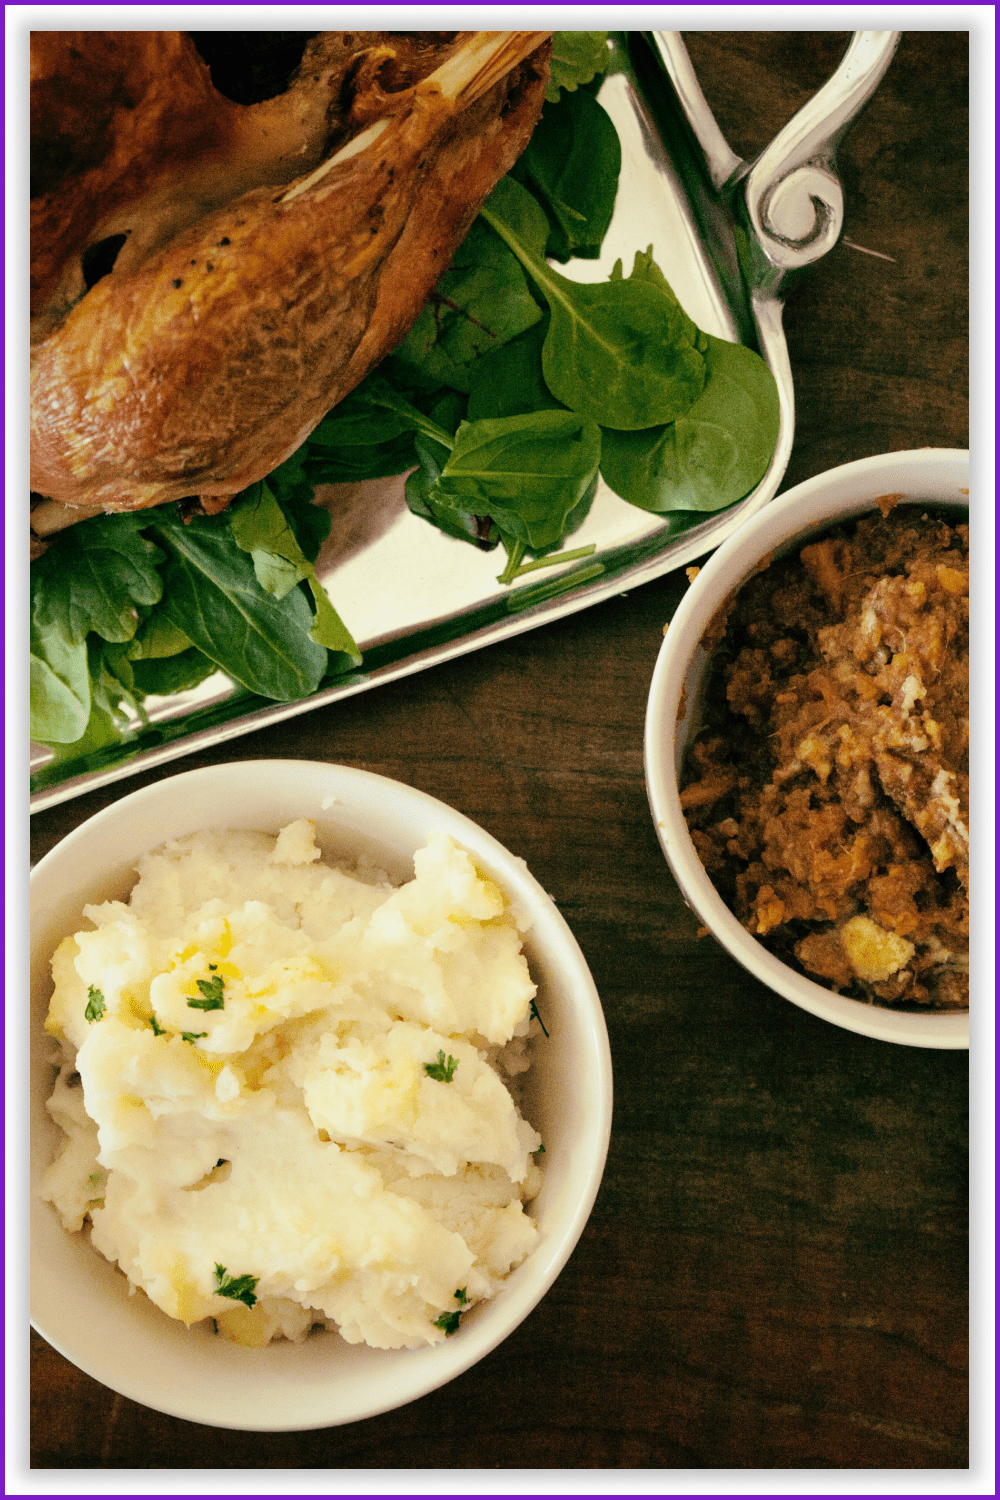 Mashed potatoes, porridge and roasted turkey on a tray.